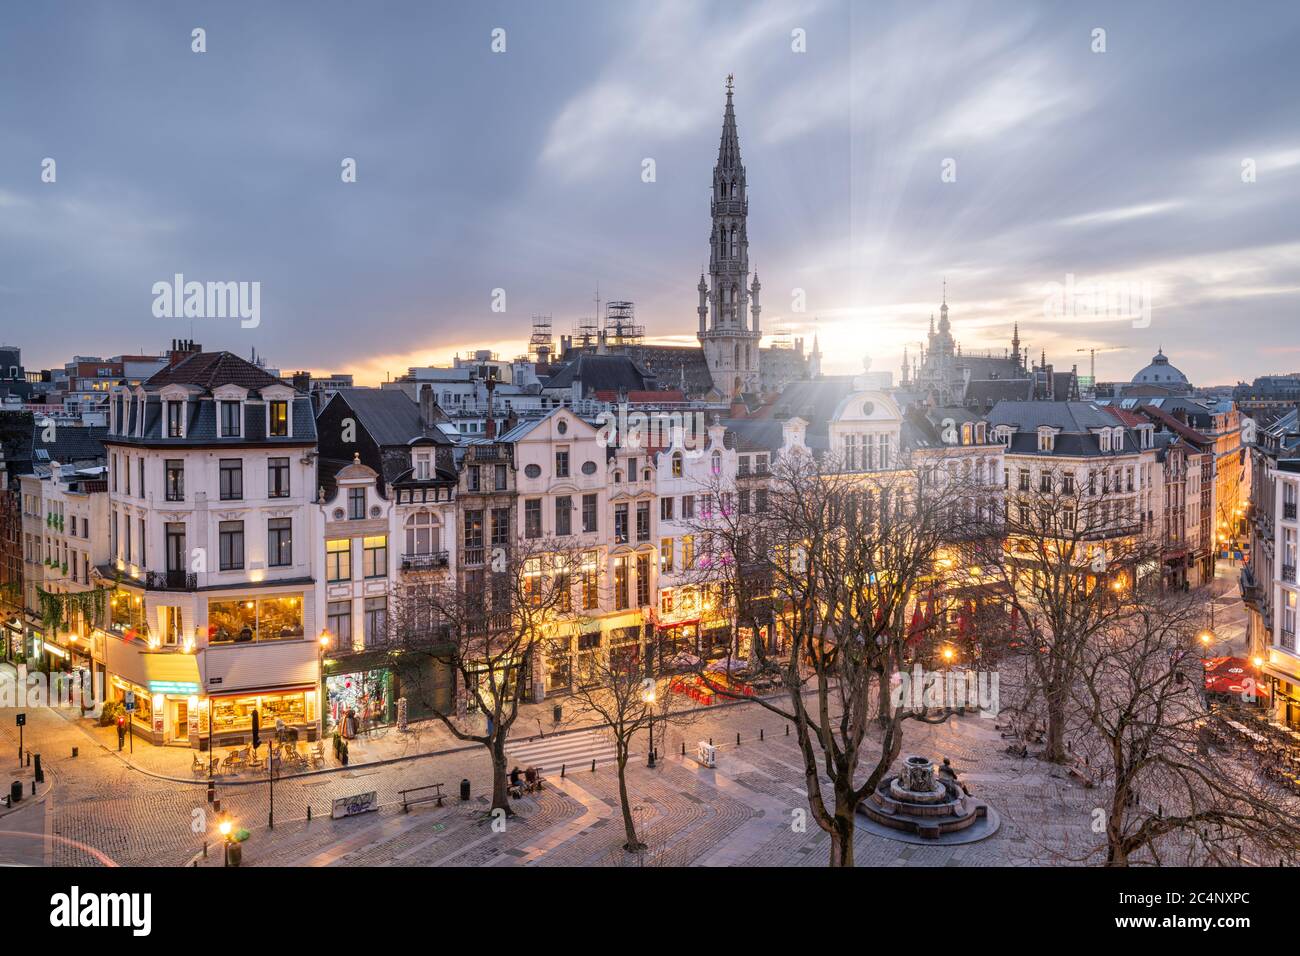 Bruxelles, Belgique plaza et horizon avec la tour de l'hôtel de ville au crépuscule. Banque D'Images